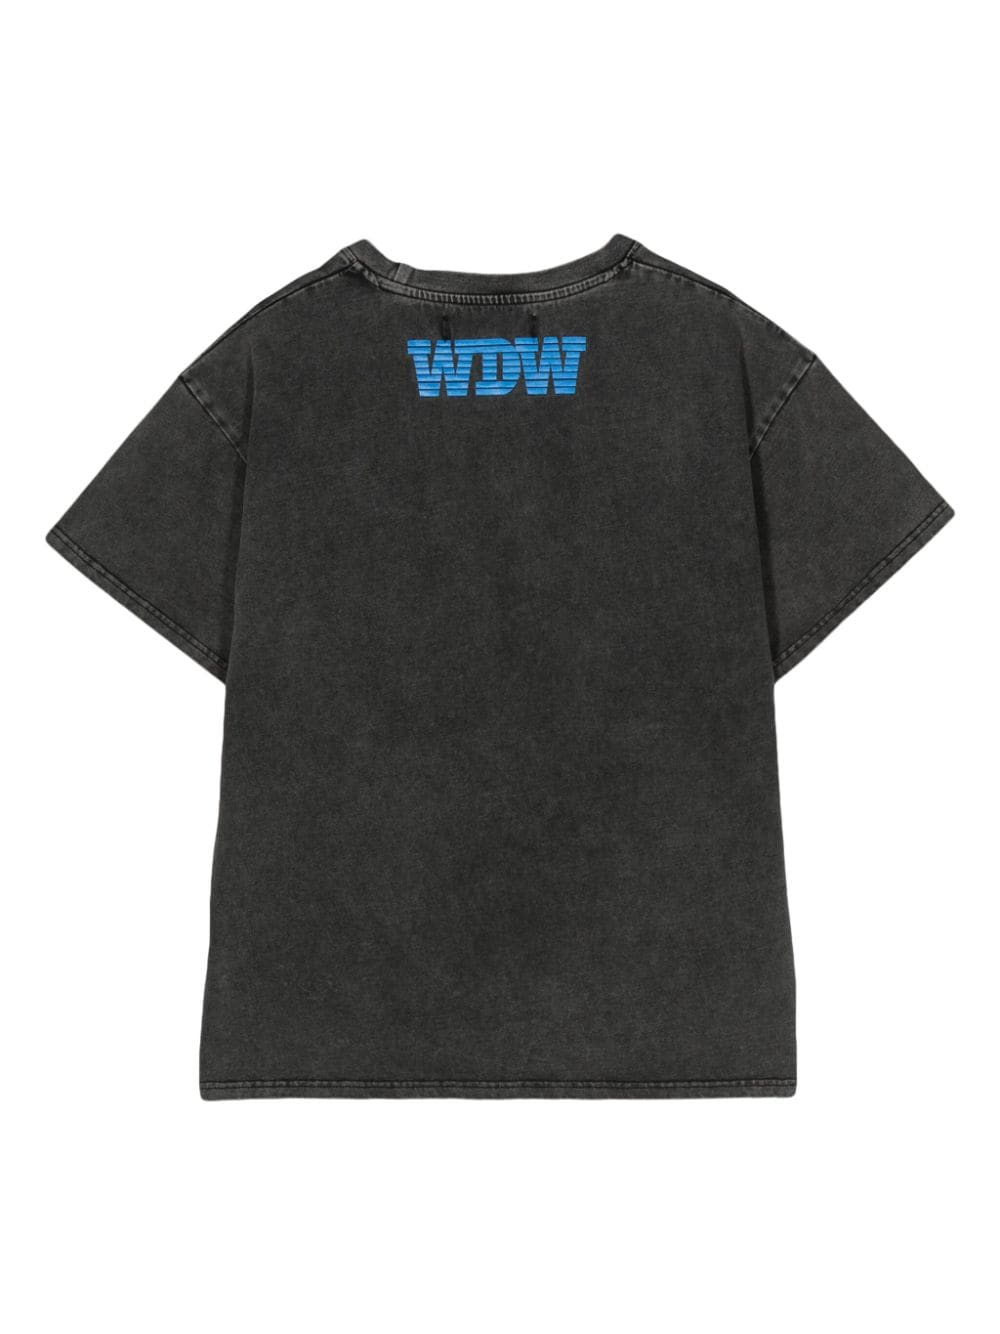 Who Decides War Transition jersey T-shirt - Grijs